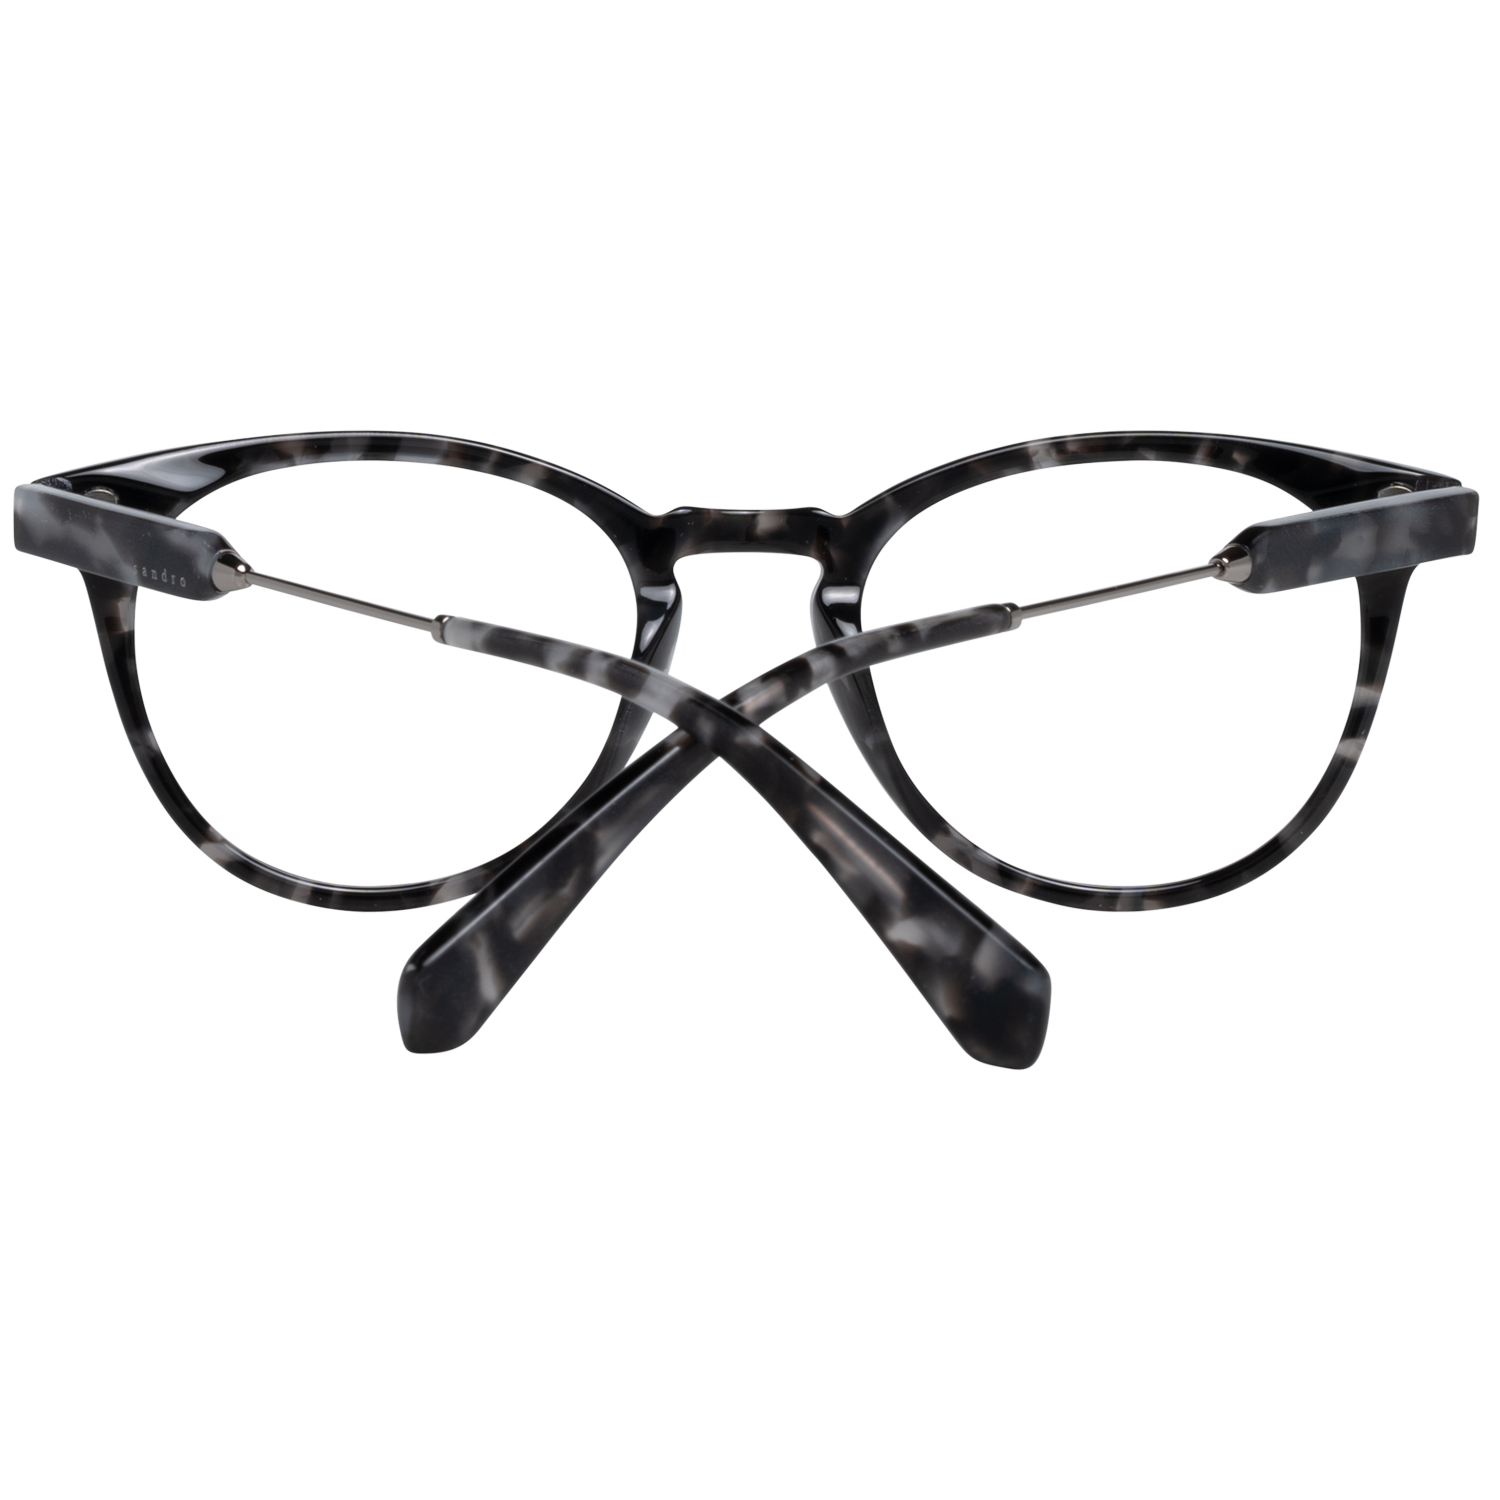 Sandro Frames Sandro Optical Frame SD1005 207 50 Eyeglasses Eyewear UK USA Australia 